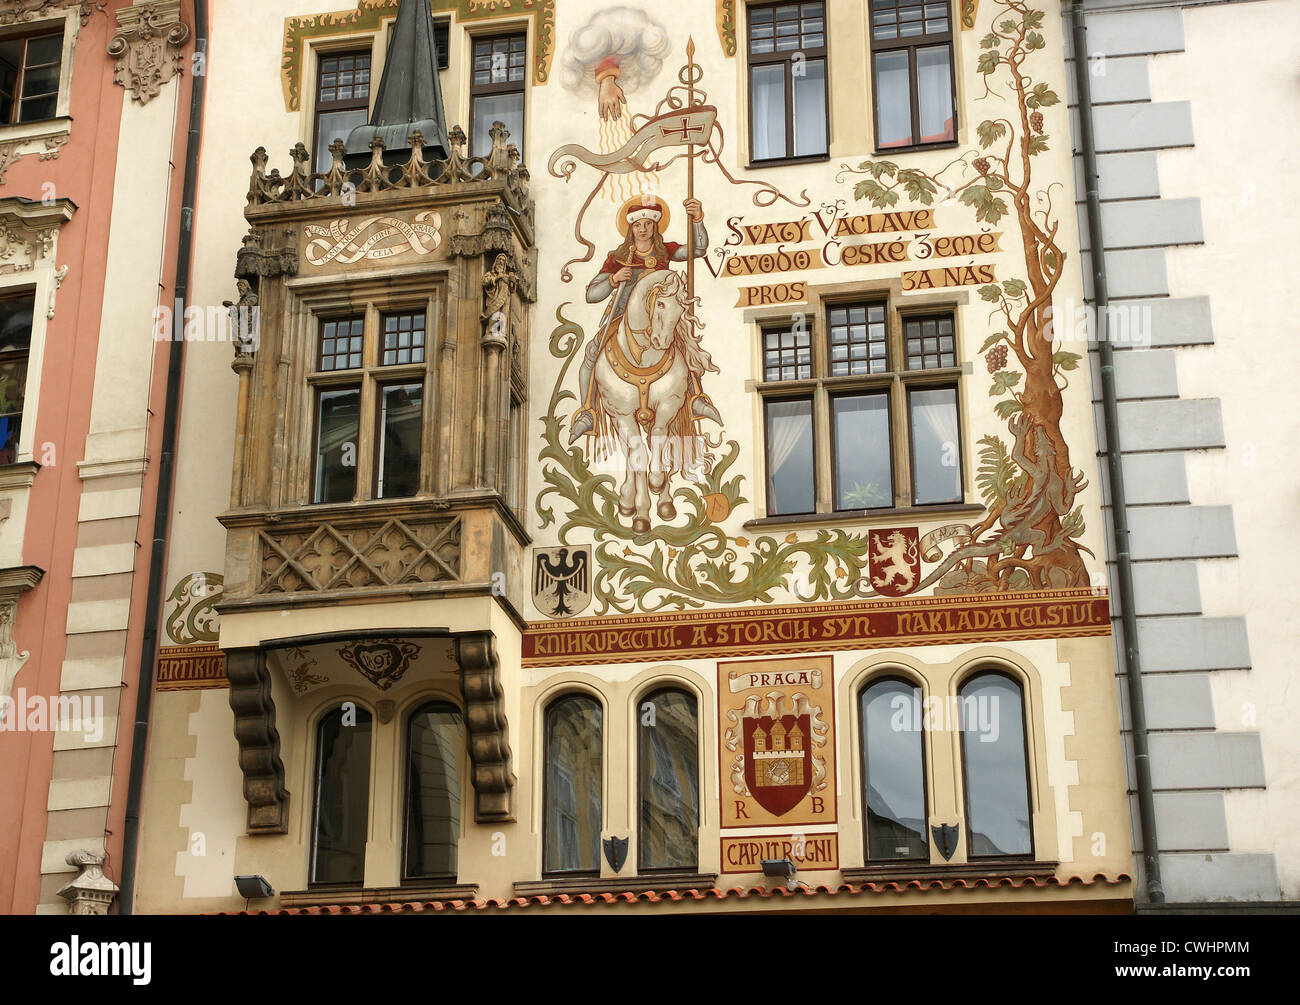 Repubblica ceca. Praga. Il Storch House (no.16). Facciata con pittura figurativa di San Venceslao a cavallo. Da Mikolas Ales Foto Stock